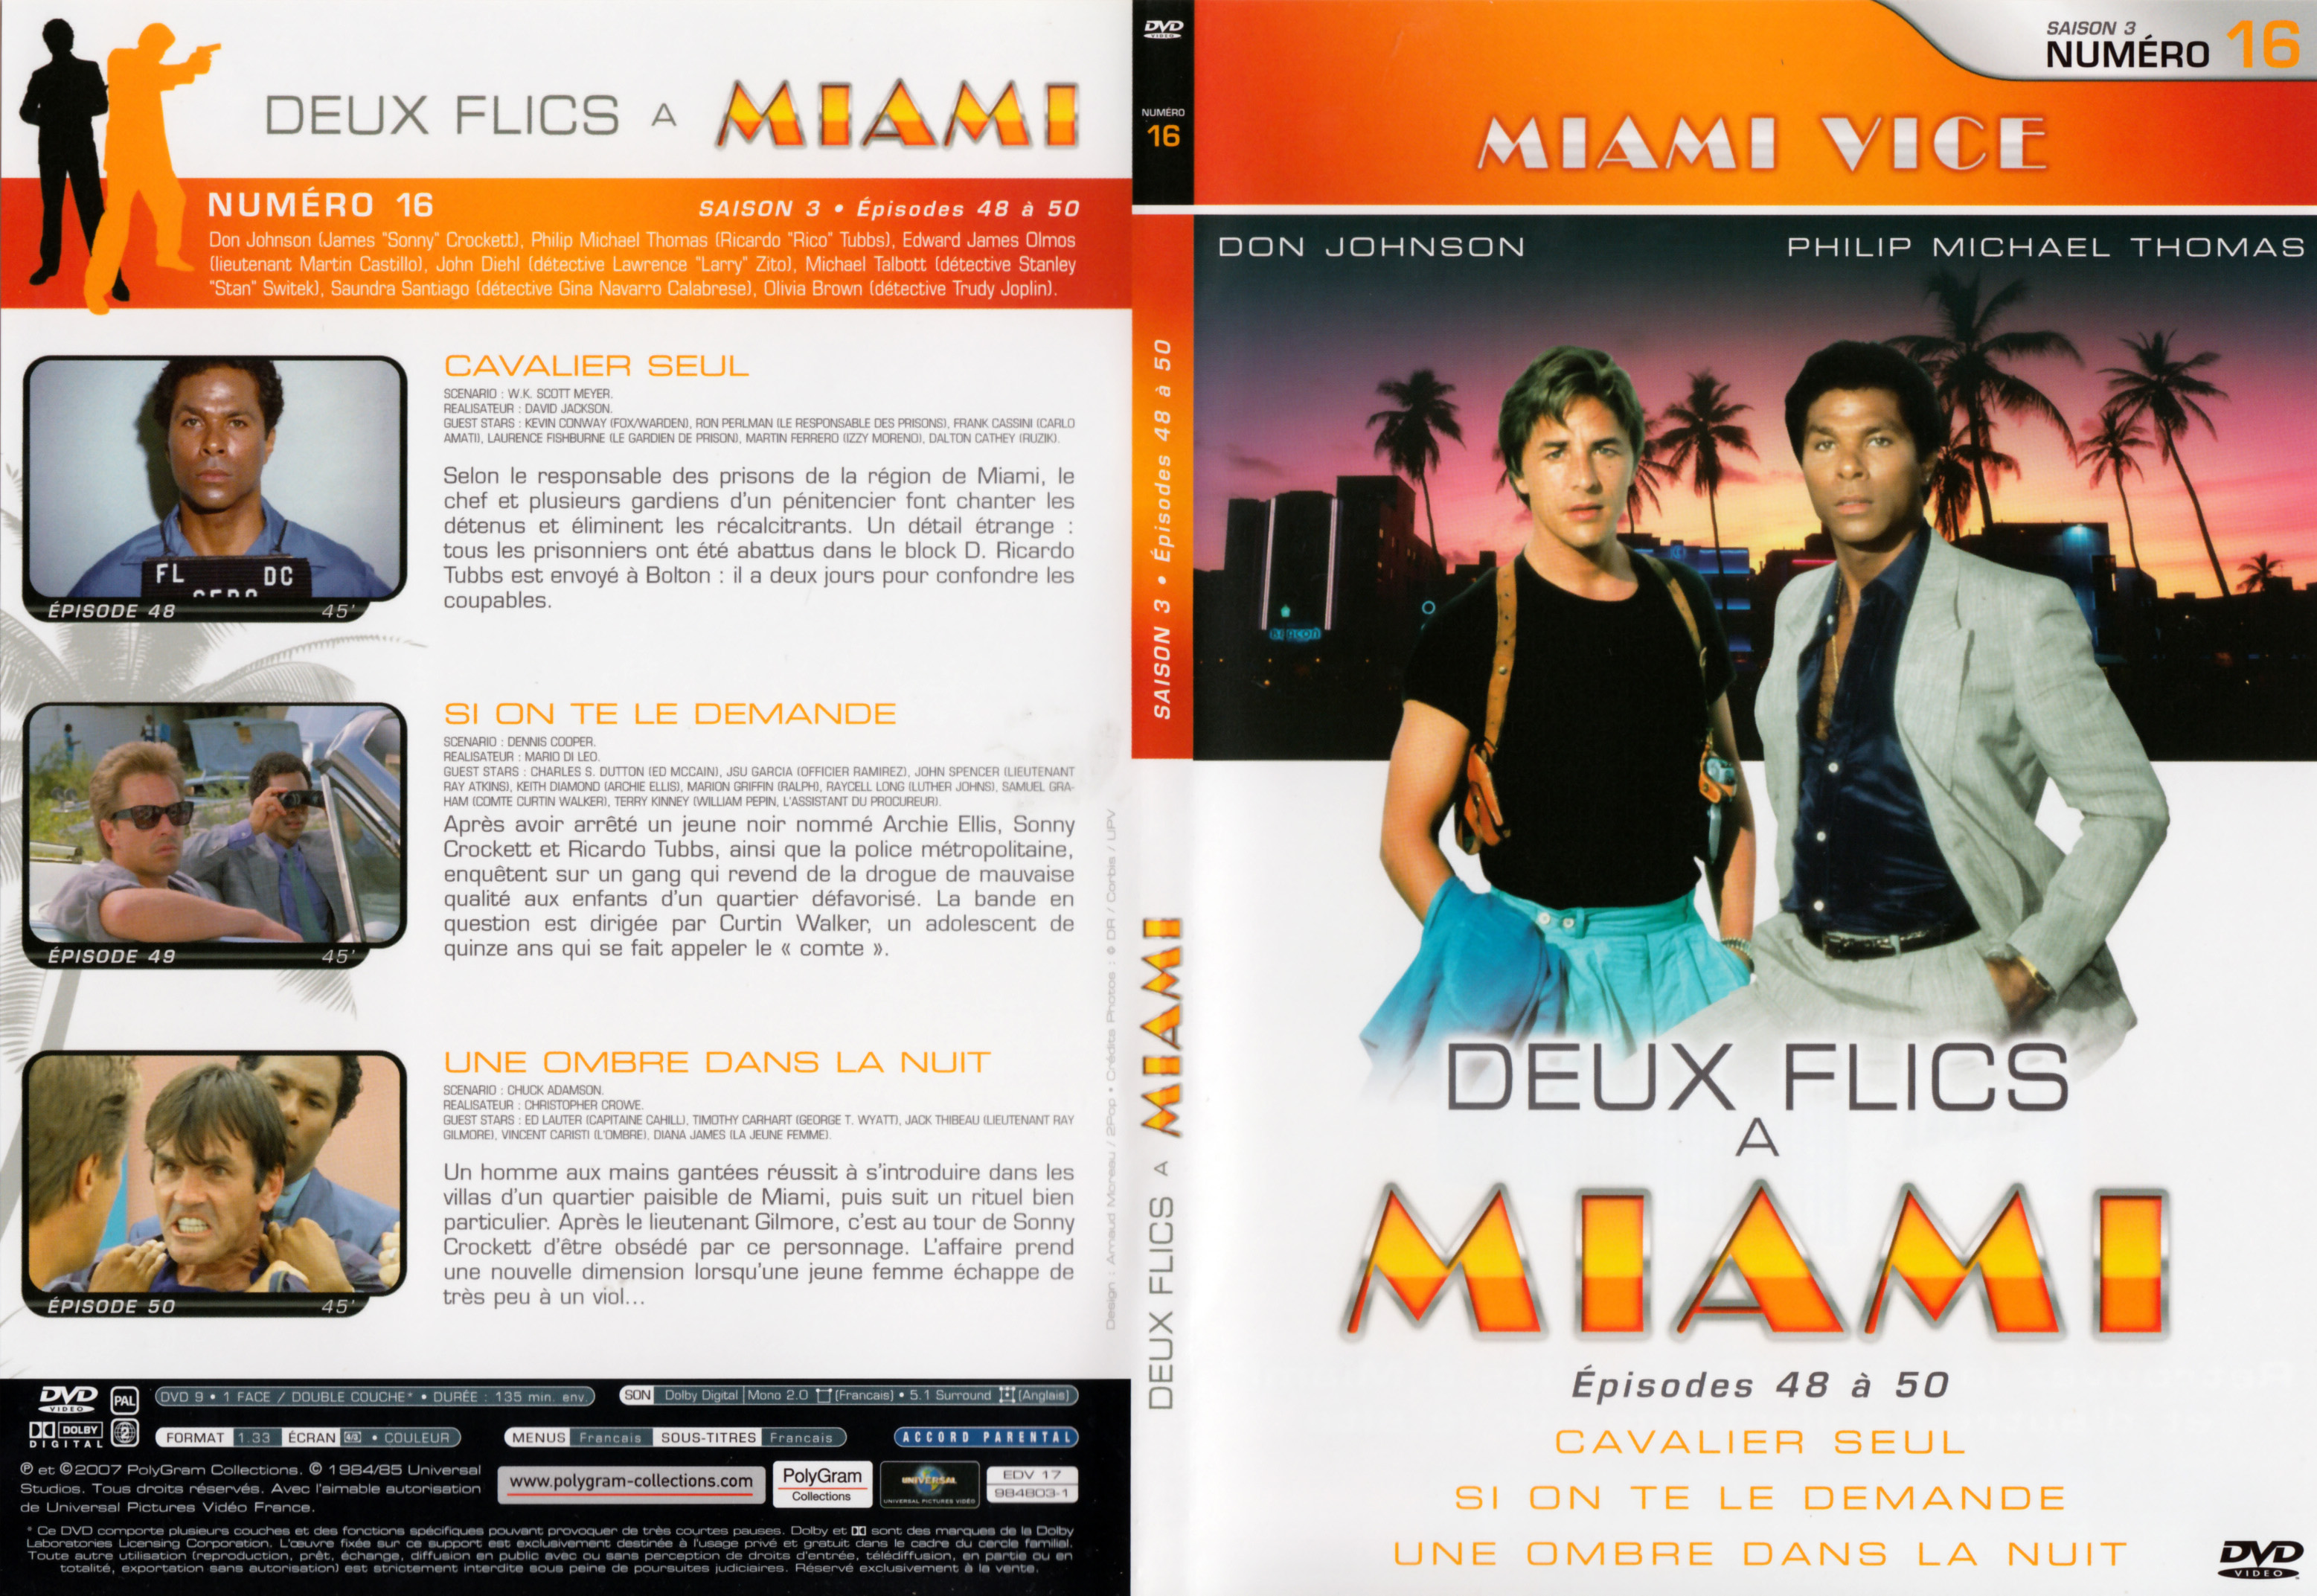 Jaquette DVD Deux flics  Miami Saison 3 vol 16